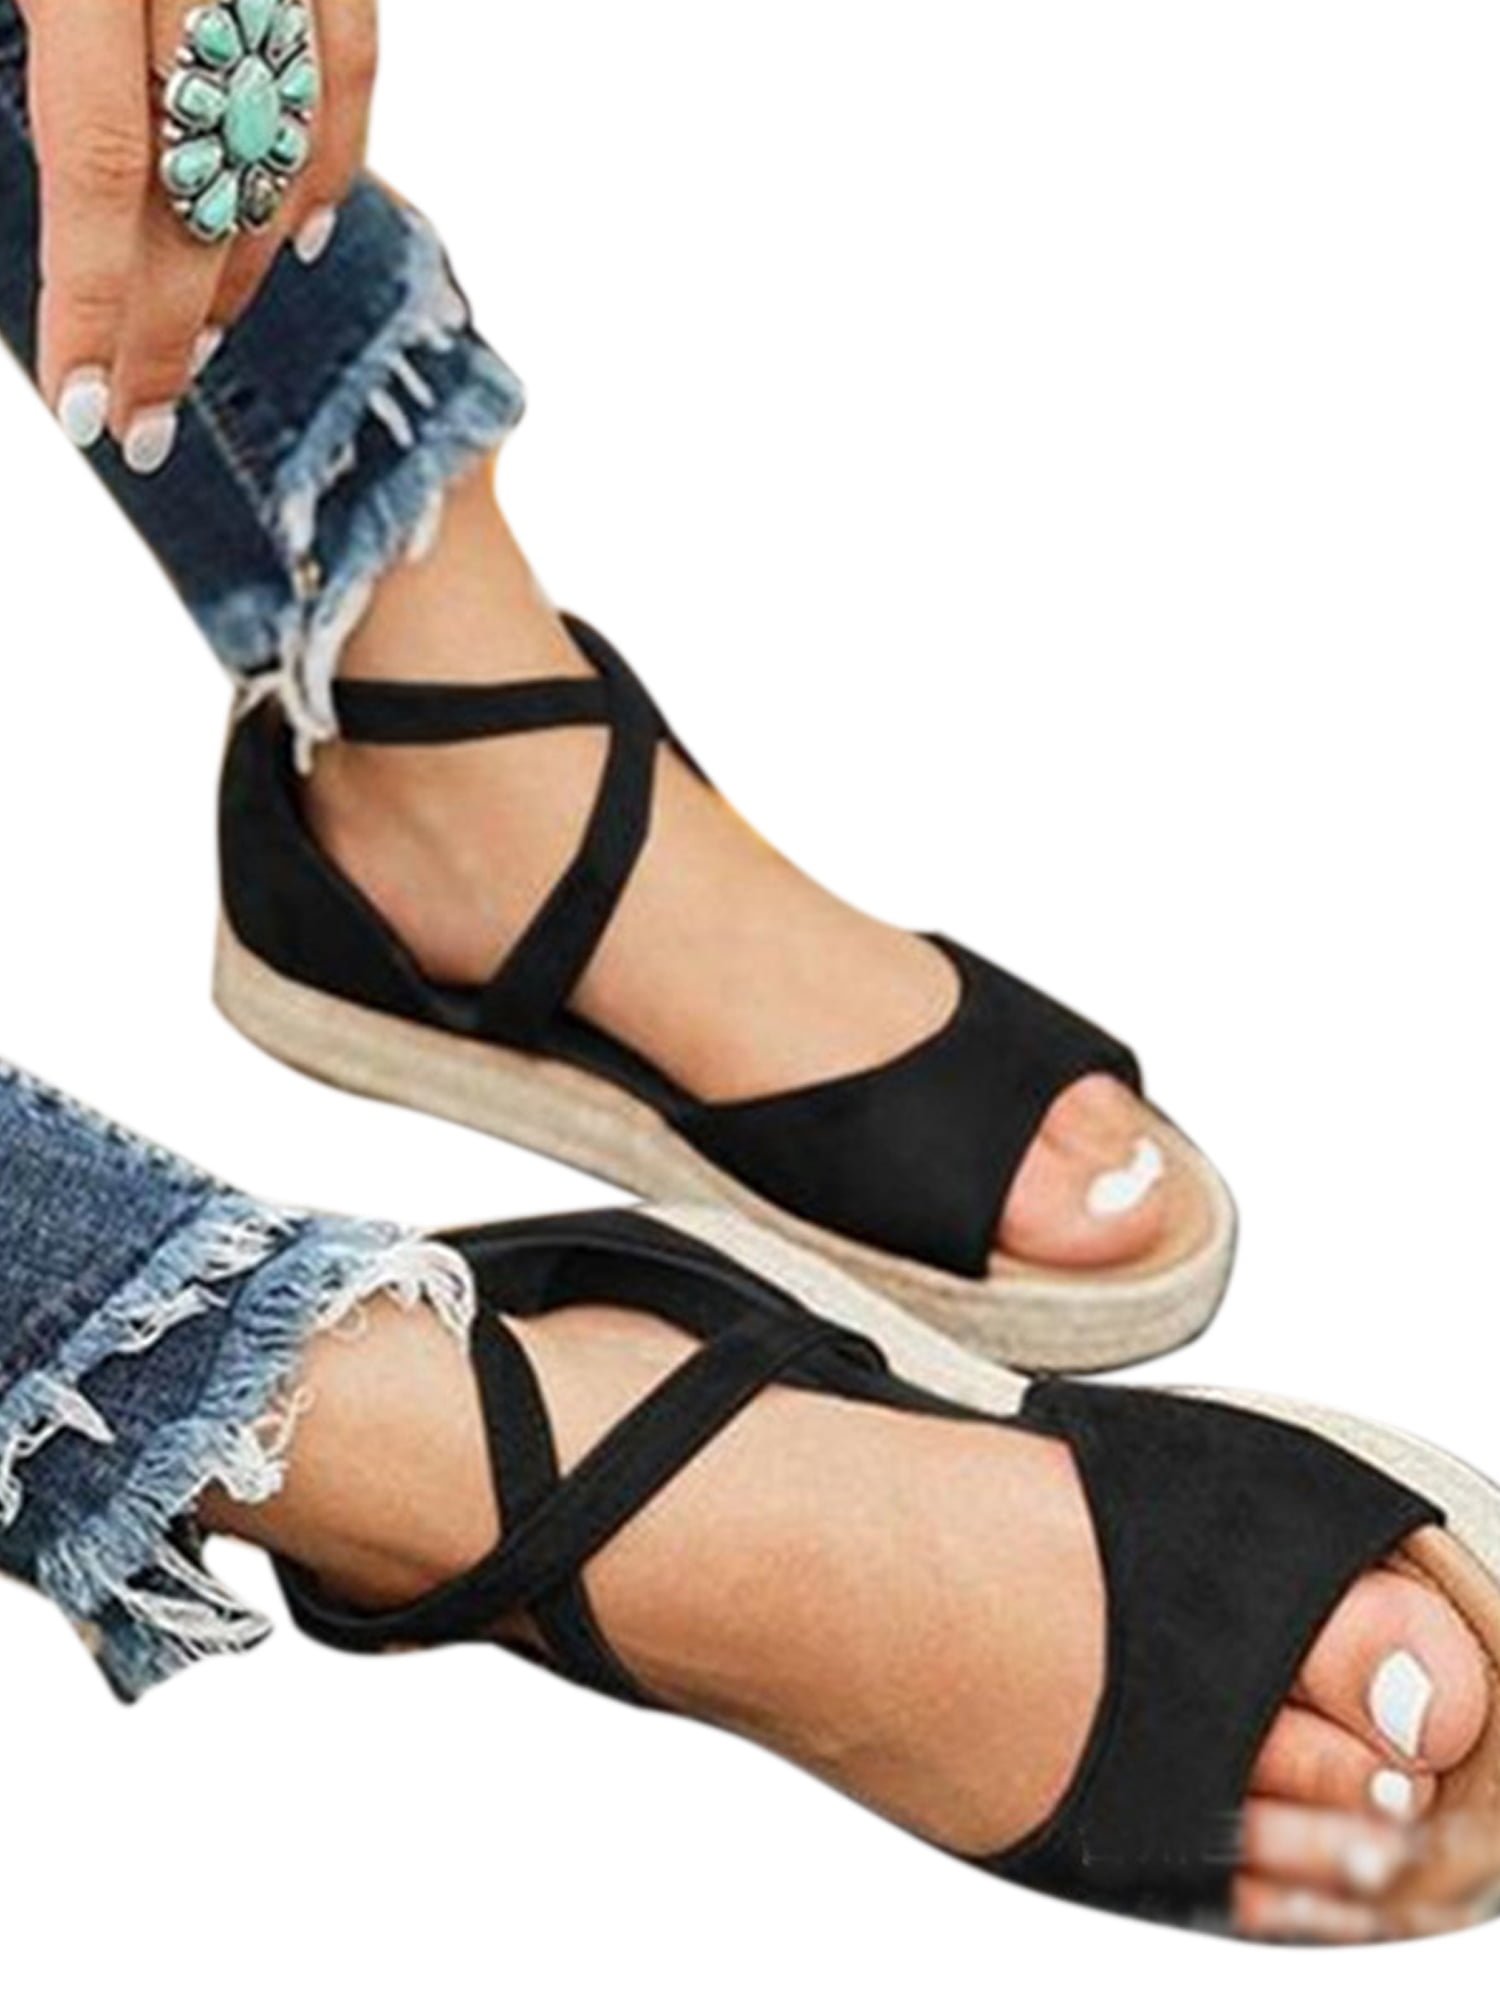 Sandals Womens Platform Pumps Shoes Peep Toe Summer Ankle Strap Flat Sandals Espadrilles